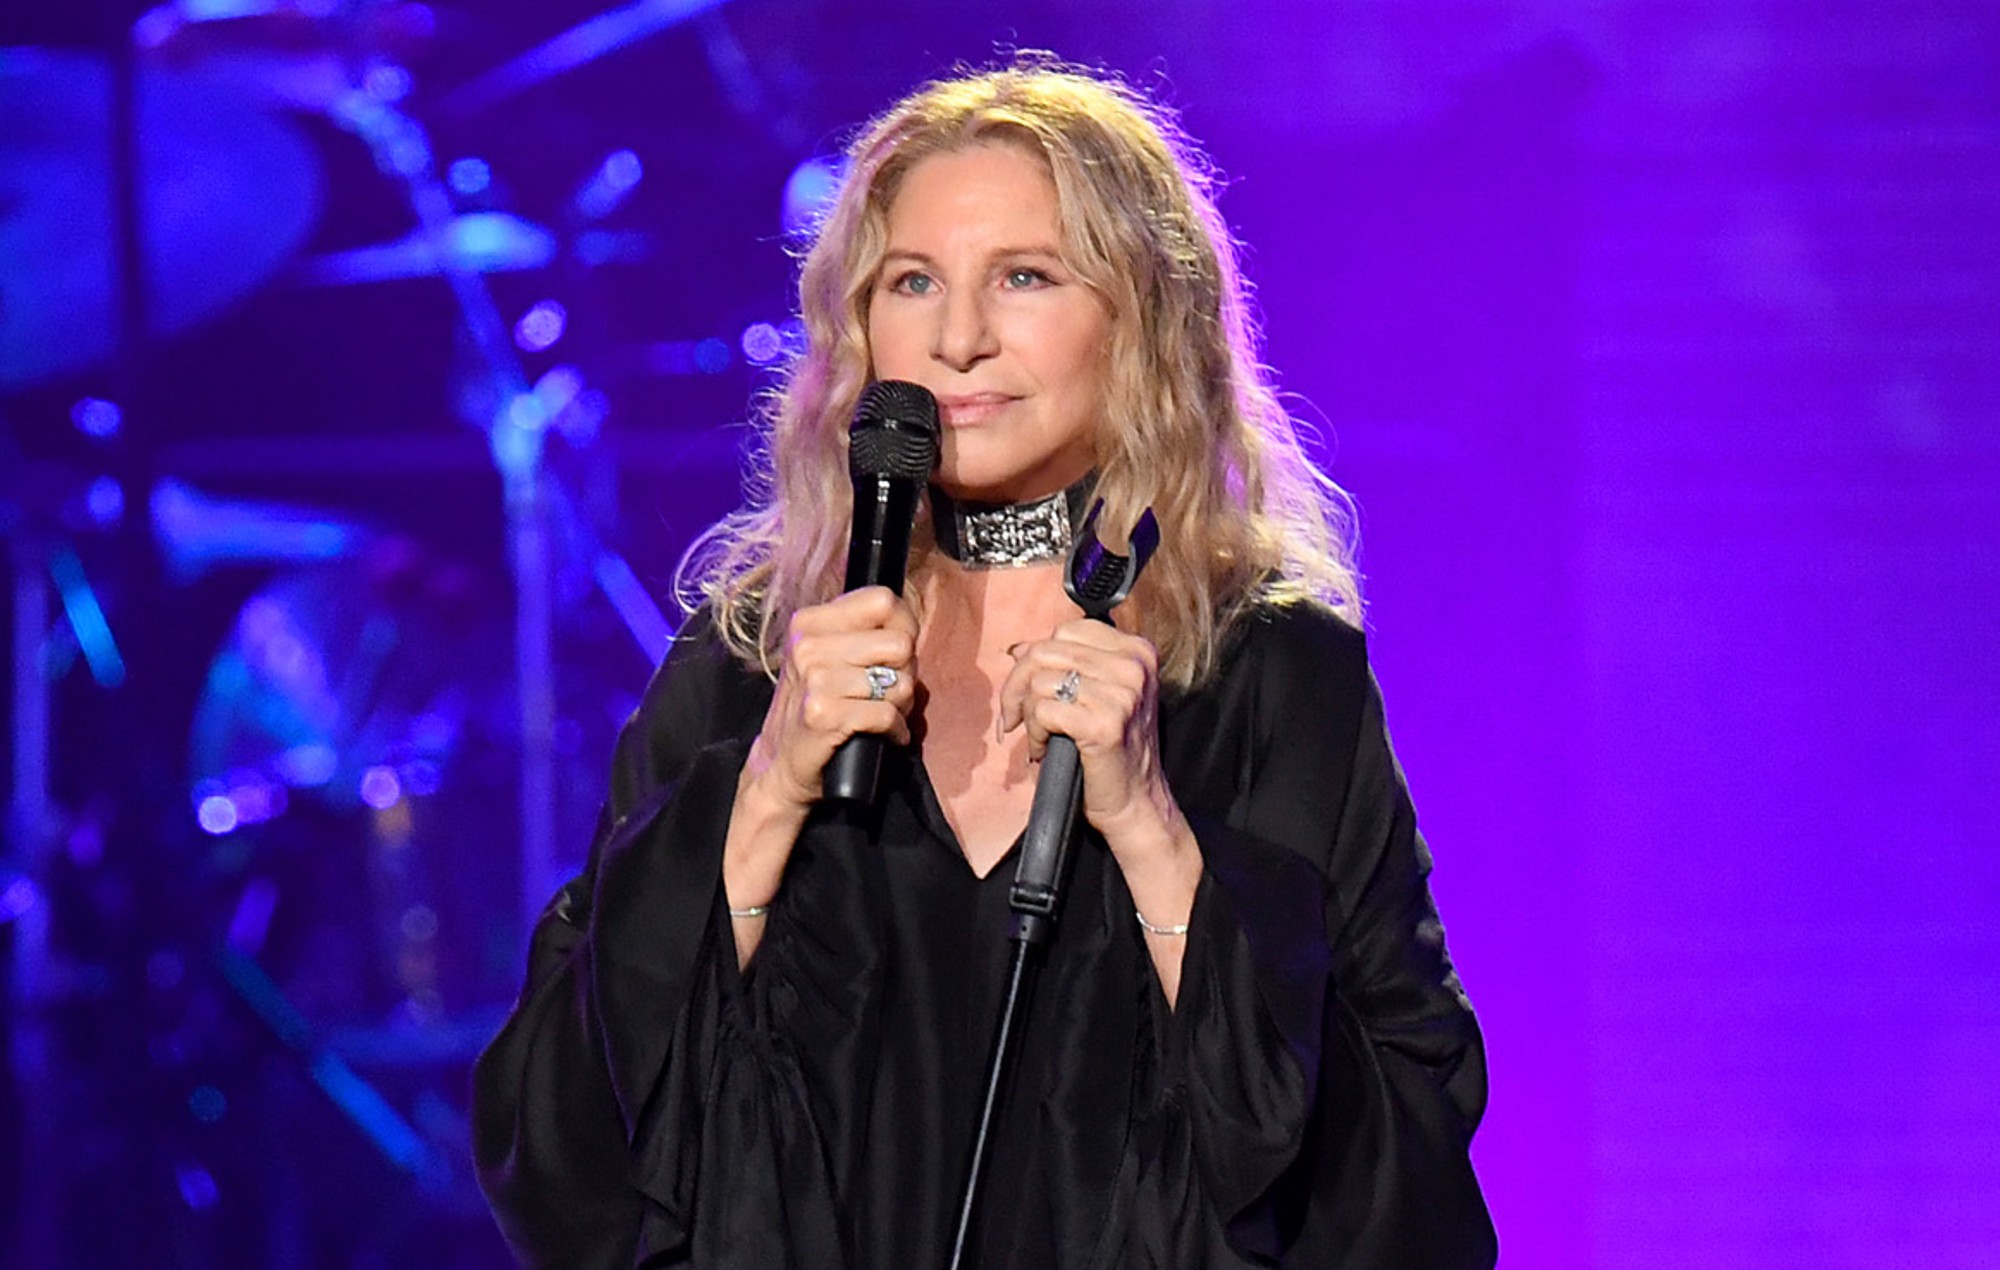 Siri mispronounced Barbra Streisand’s name so she got Tim Cook to fix it